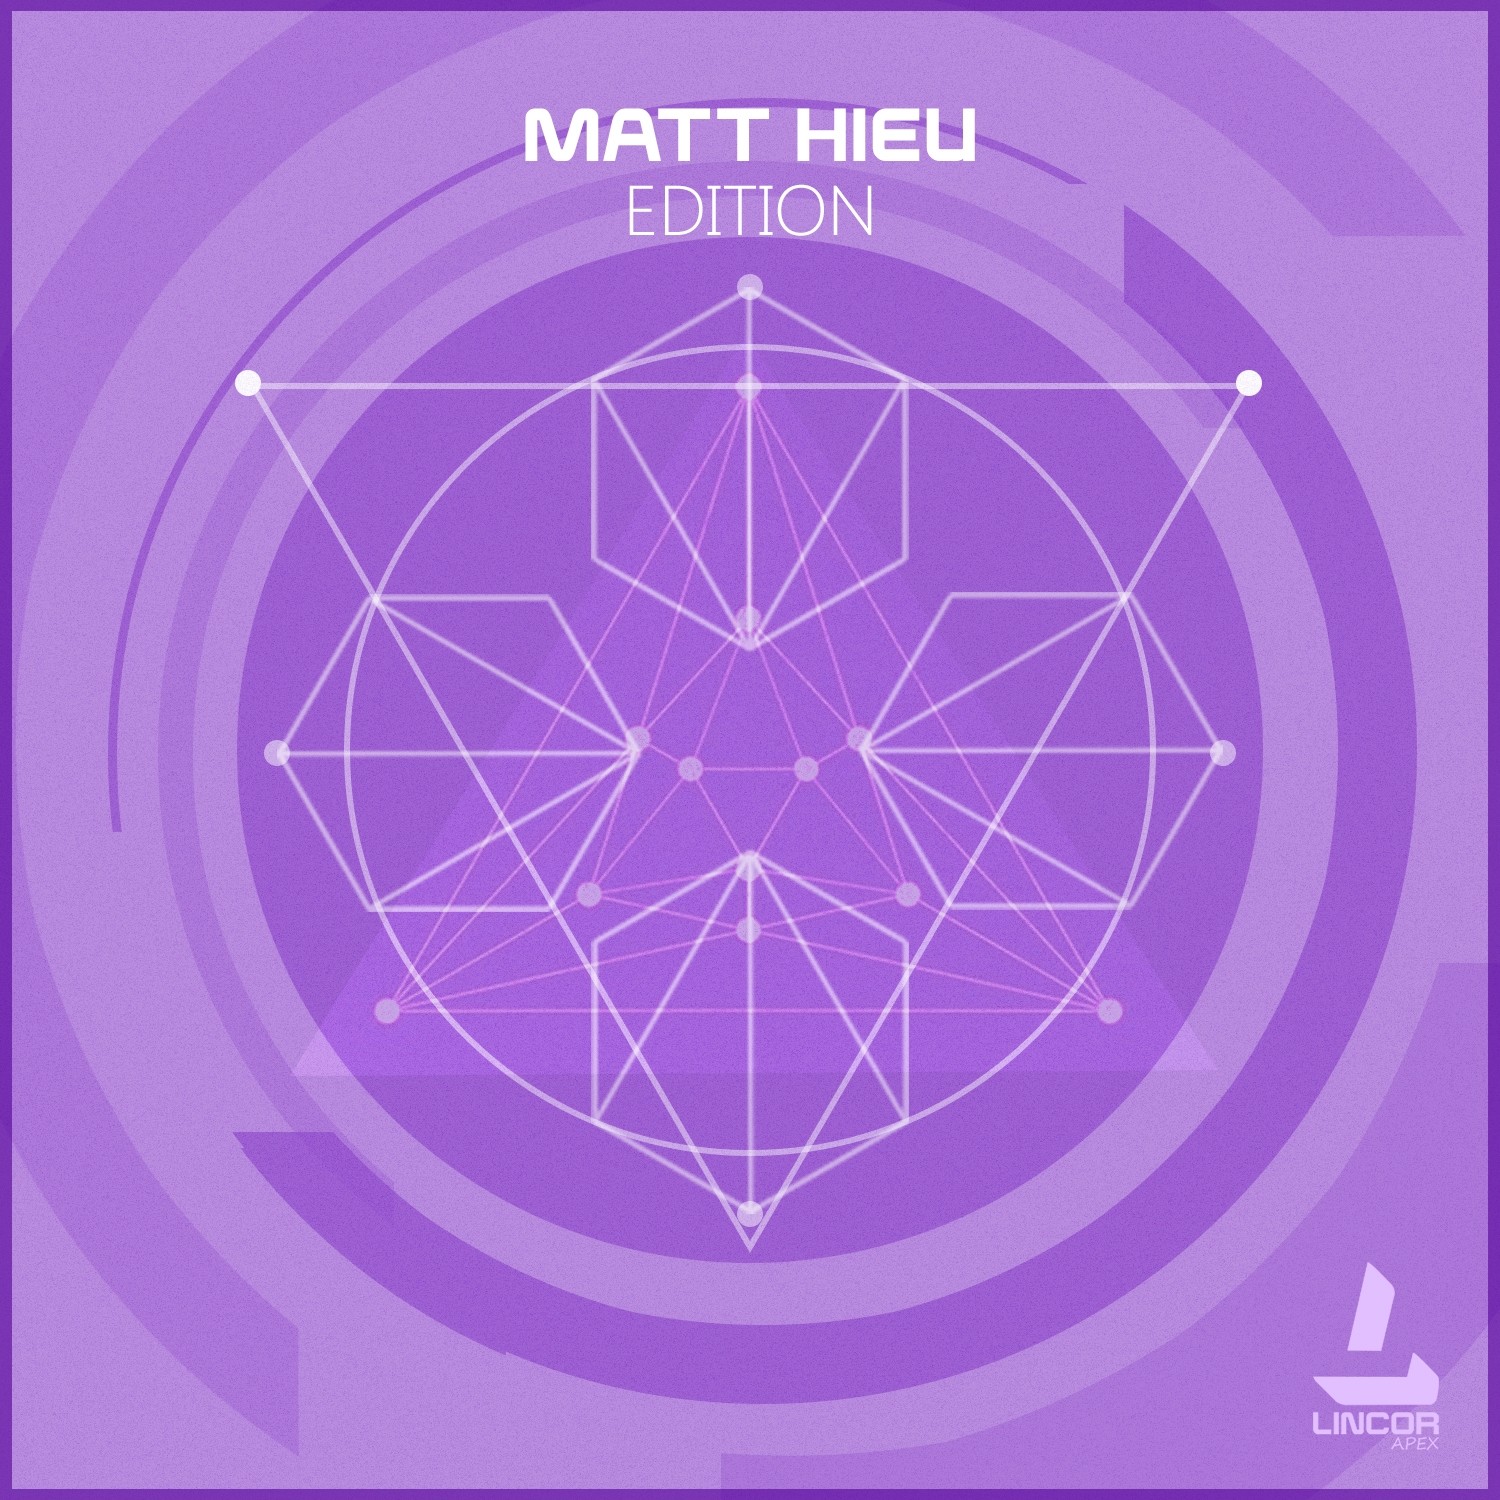 Matt Hieu Edition